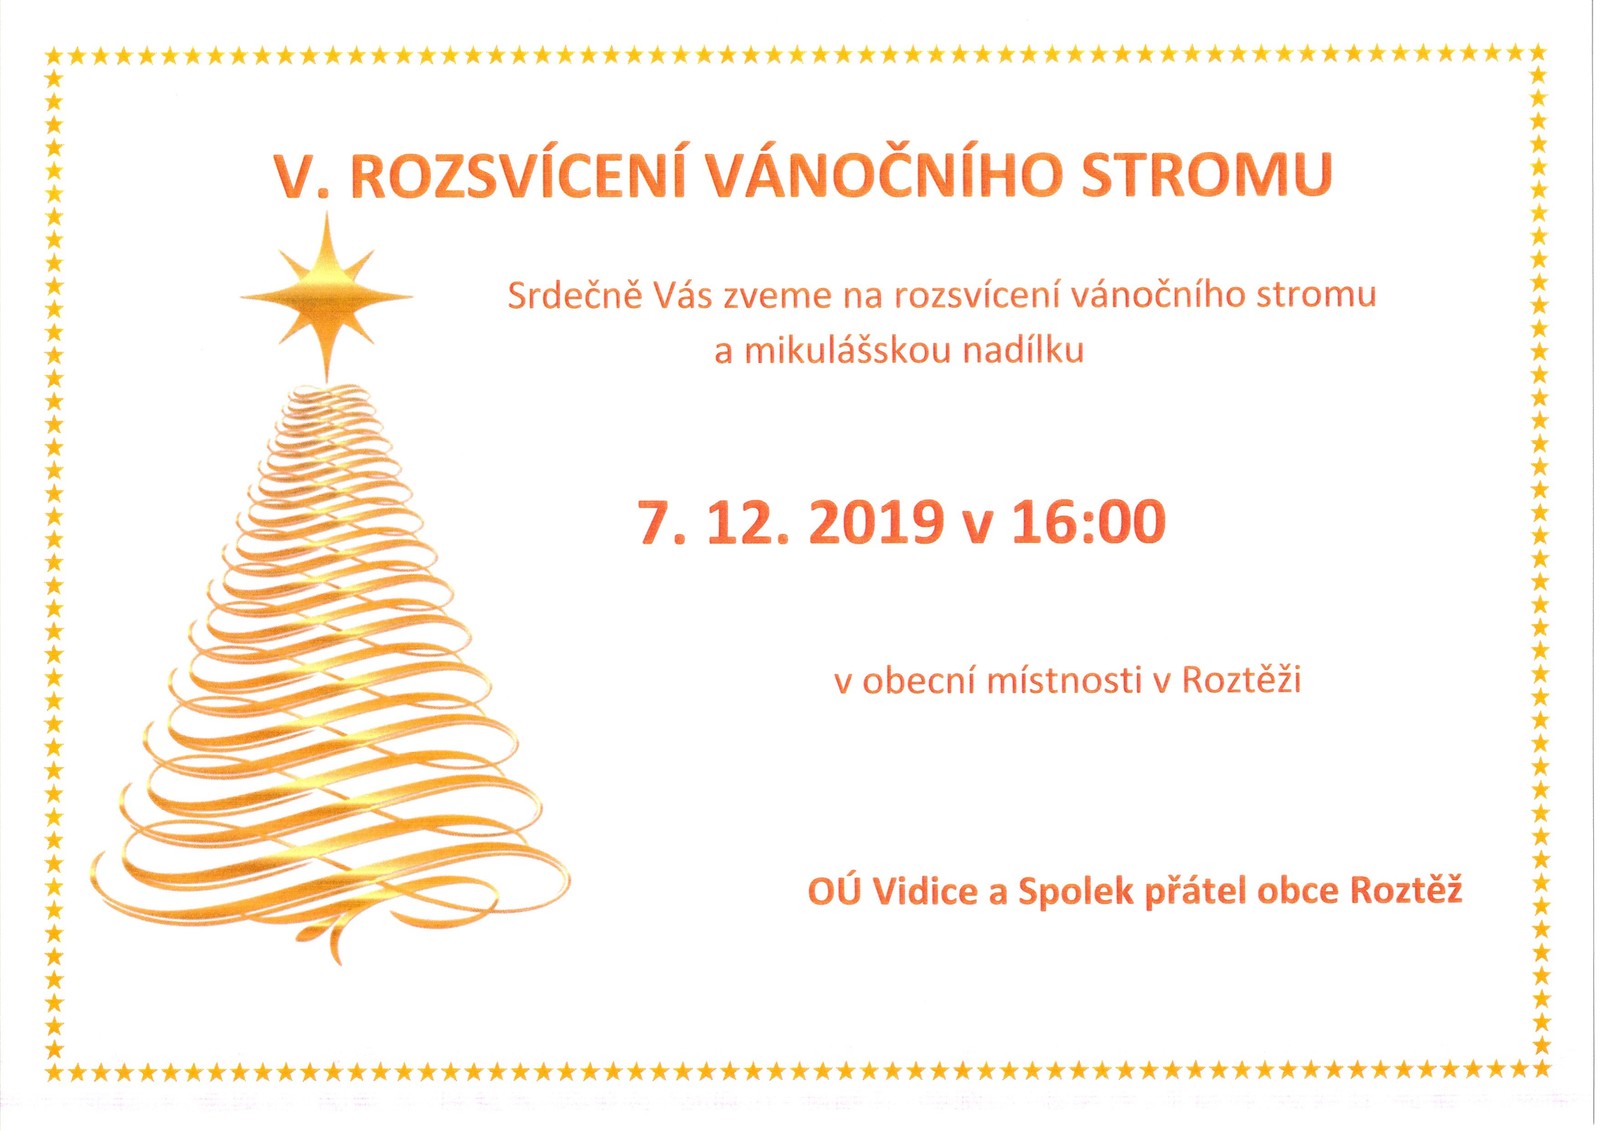 Pozvanka_rozsviceni_stromu_2019.jpg